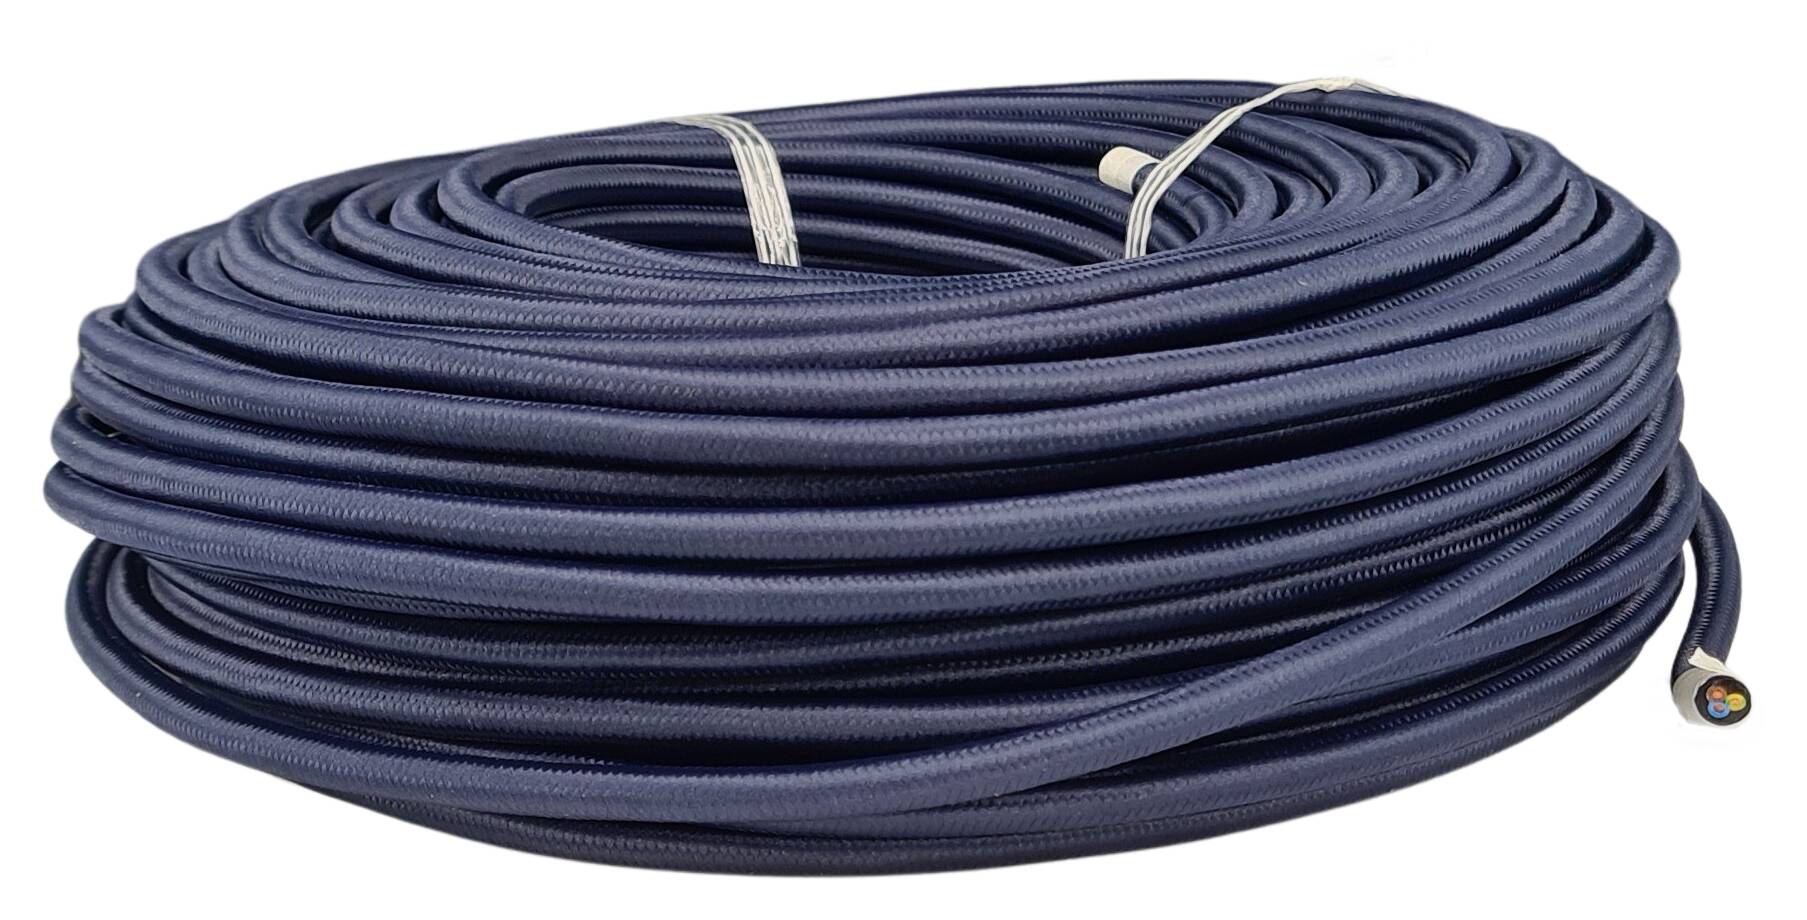 Kabel 3G 0,75 H03VV-F textilummantelt RAL 5013 marineblau